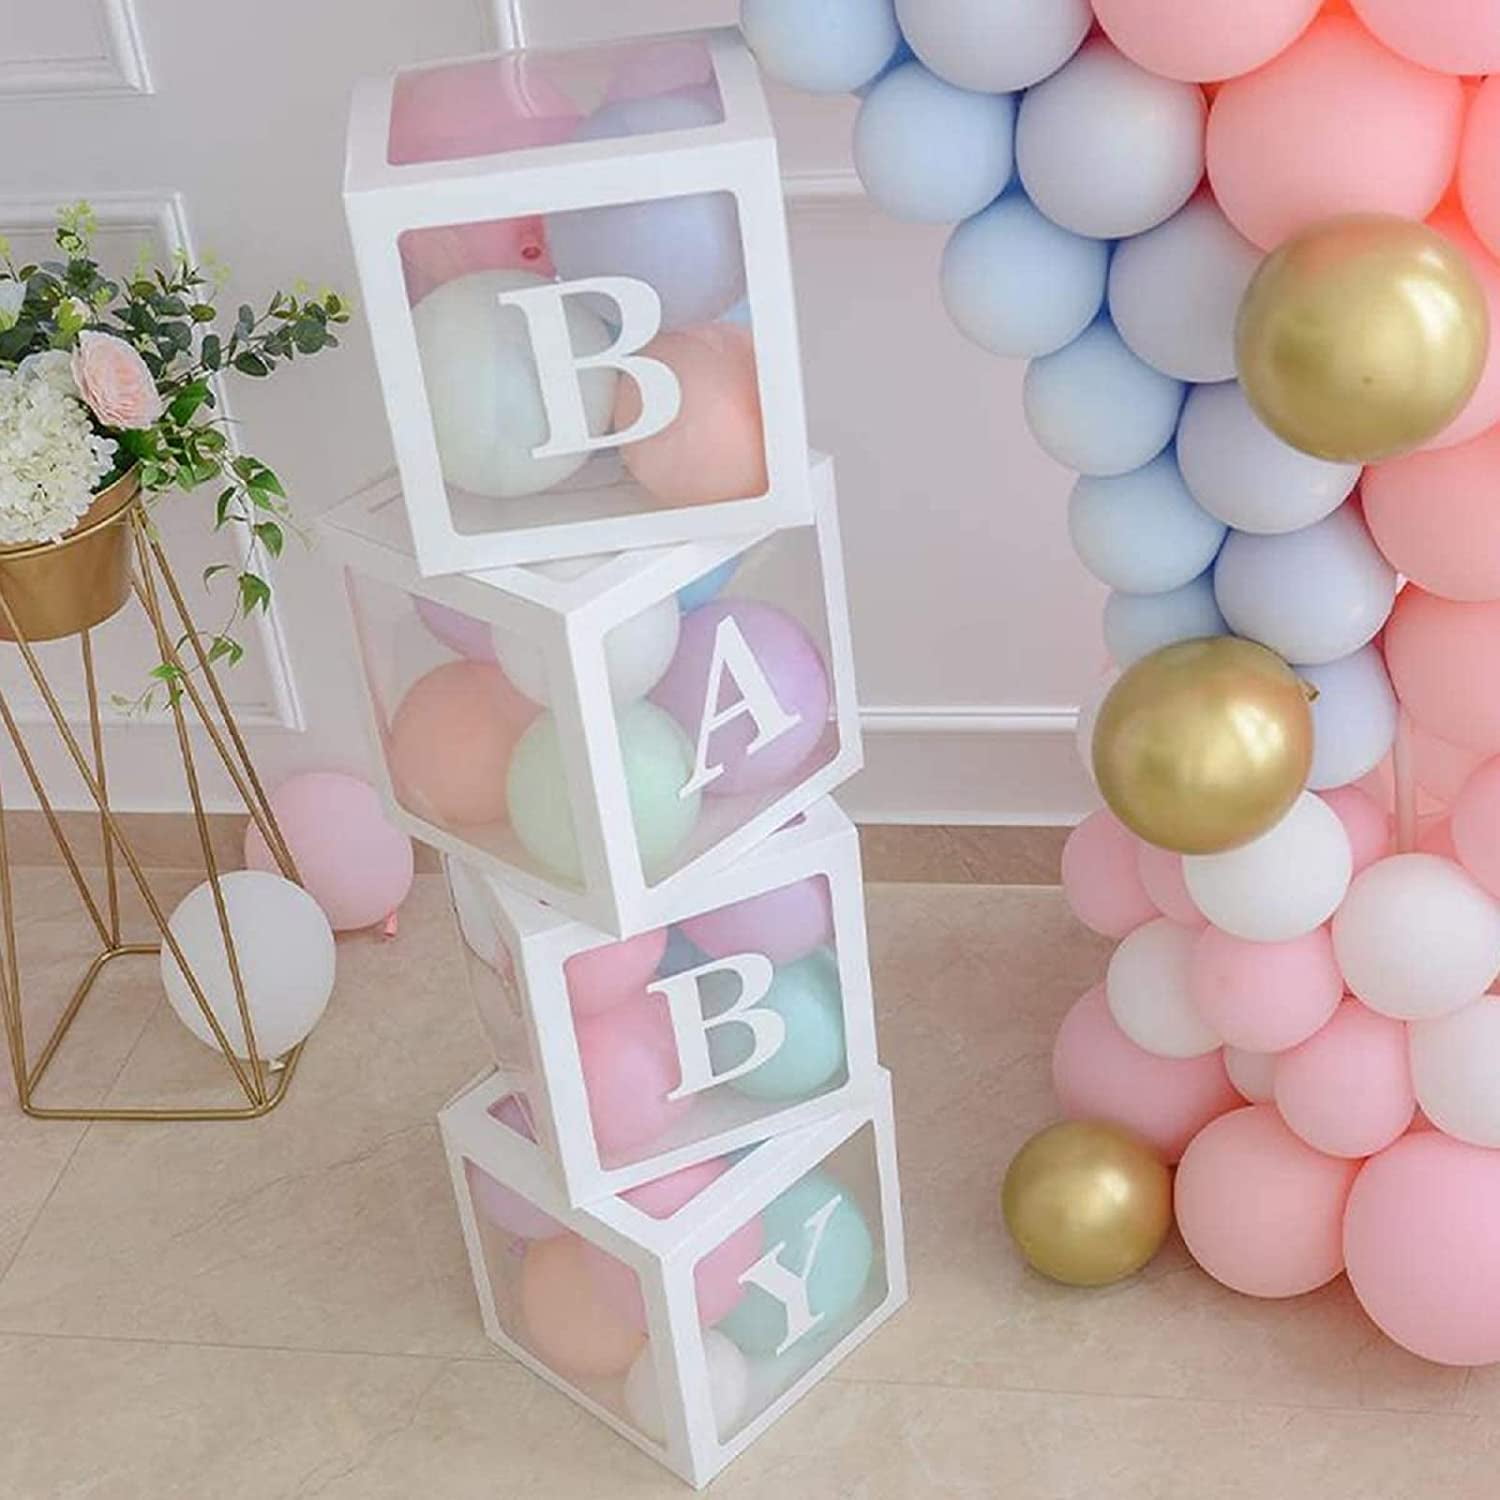 Wooden Baby Blocks Babyshower Craft // DIY - Pure Sweet Joy  Wooden baby  blocks, Baby blocks baby shower, Baby shower crafts